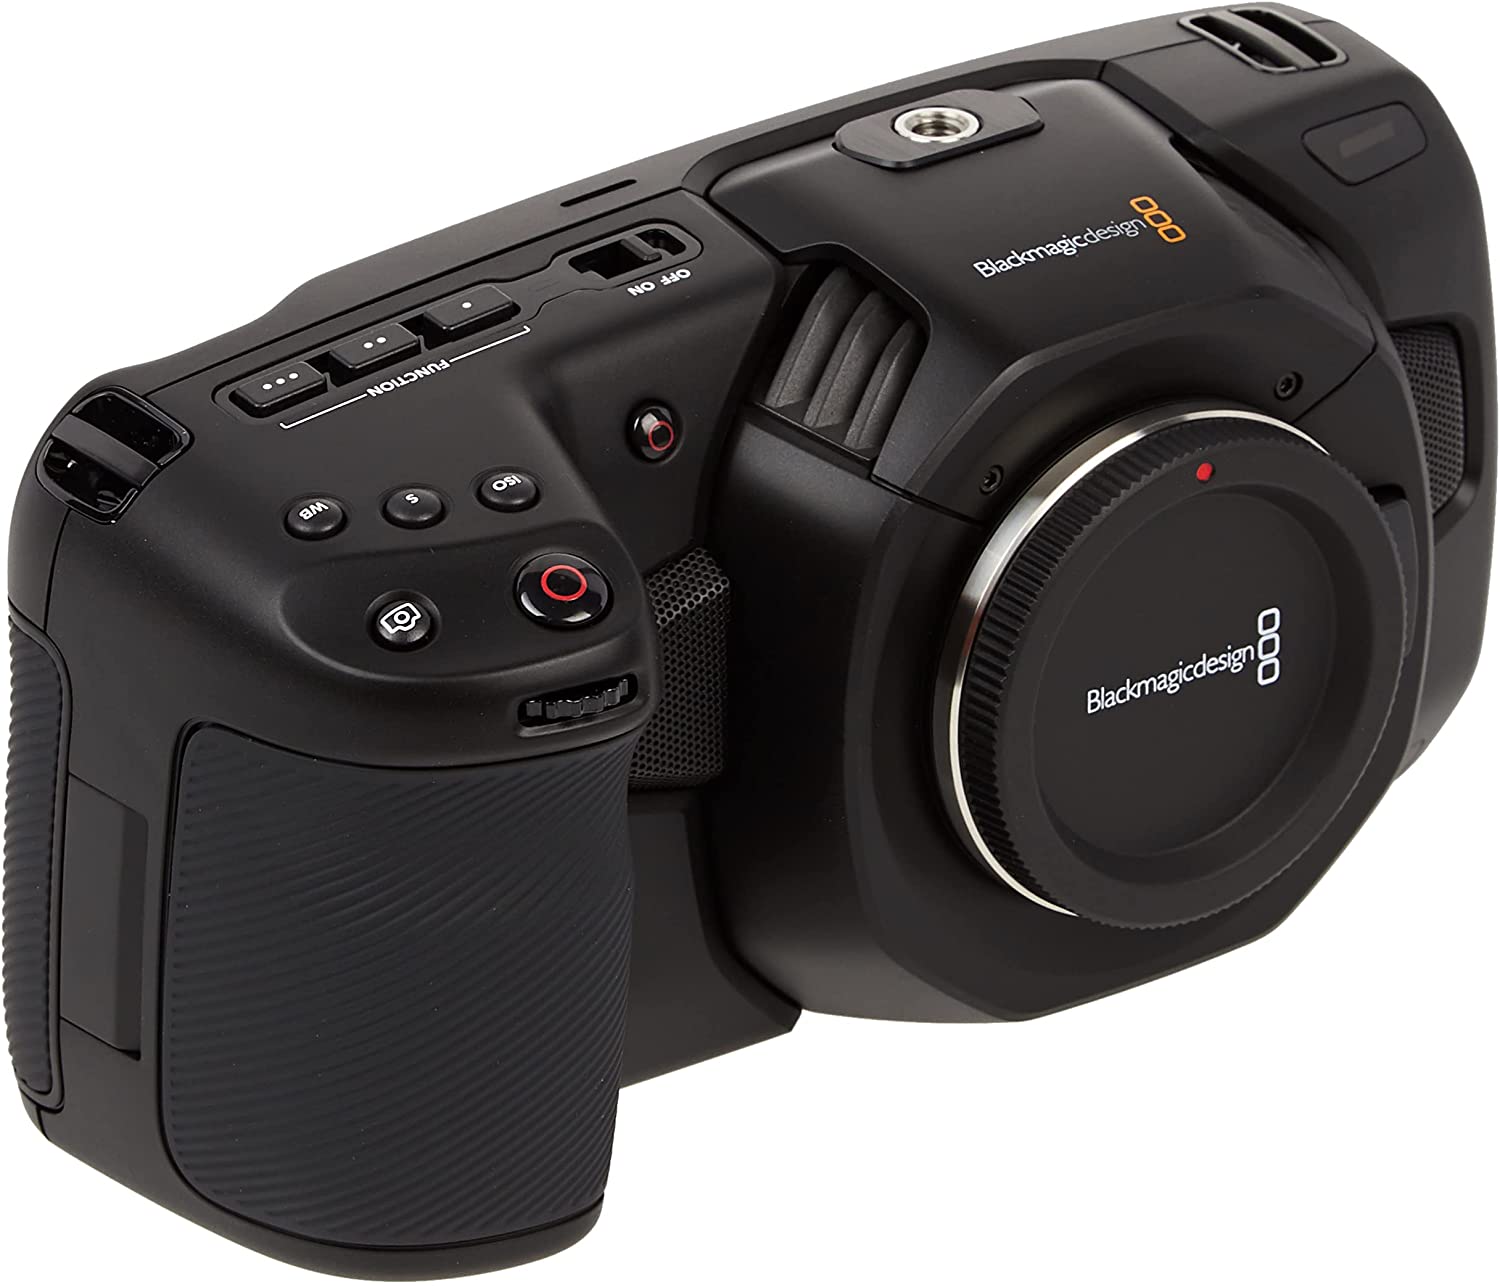 Blackmagic URSA Mini: Sự kết hợp giữa công nghệ và nghệ thuật đã mang đến sự hoàn hảo cho Blackmagic URSA Mini. Với khả năng quay phim 4K và tính năng tùy chỉnh hình ảnh chuyên sâu, chiếc máy quay này sẽ giúp bạn tạo ra những sản phẩm video độc đáo và chất lượng như một đạo diễn chuyên nghiệp.